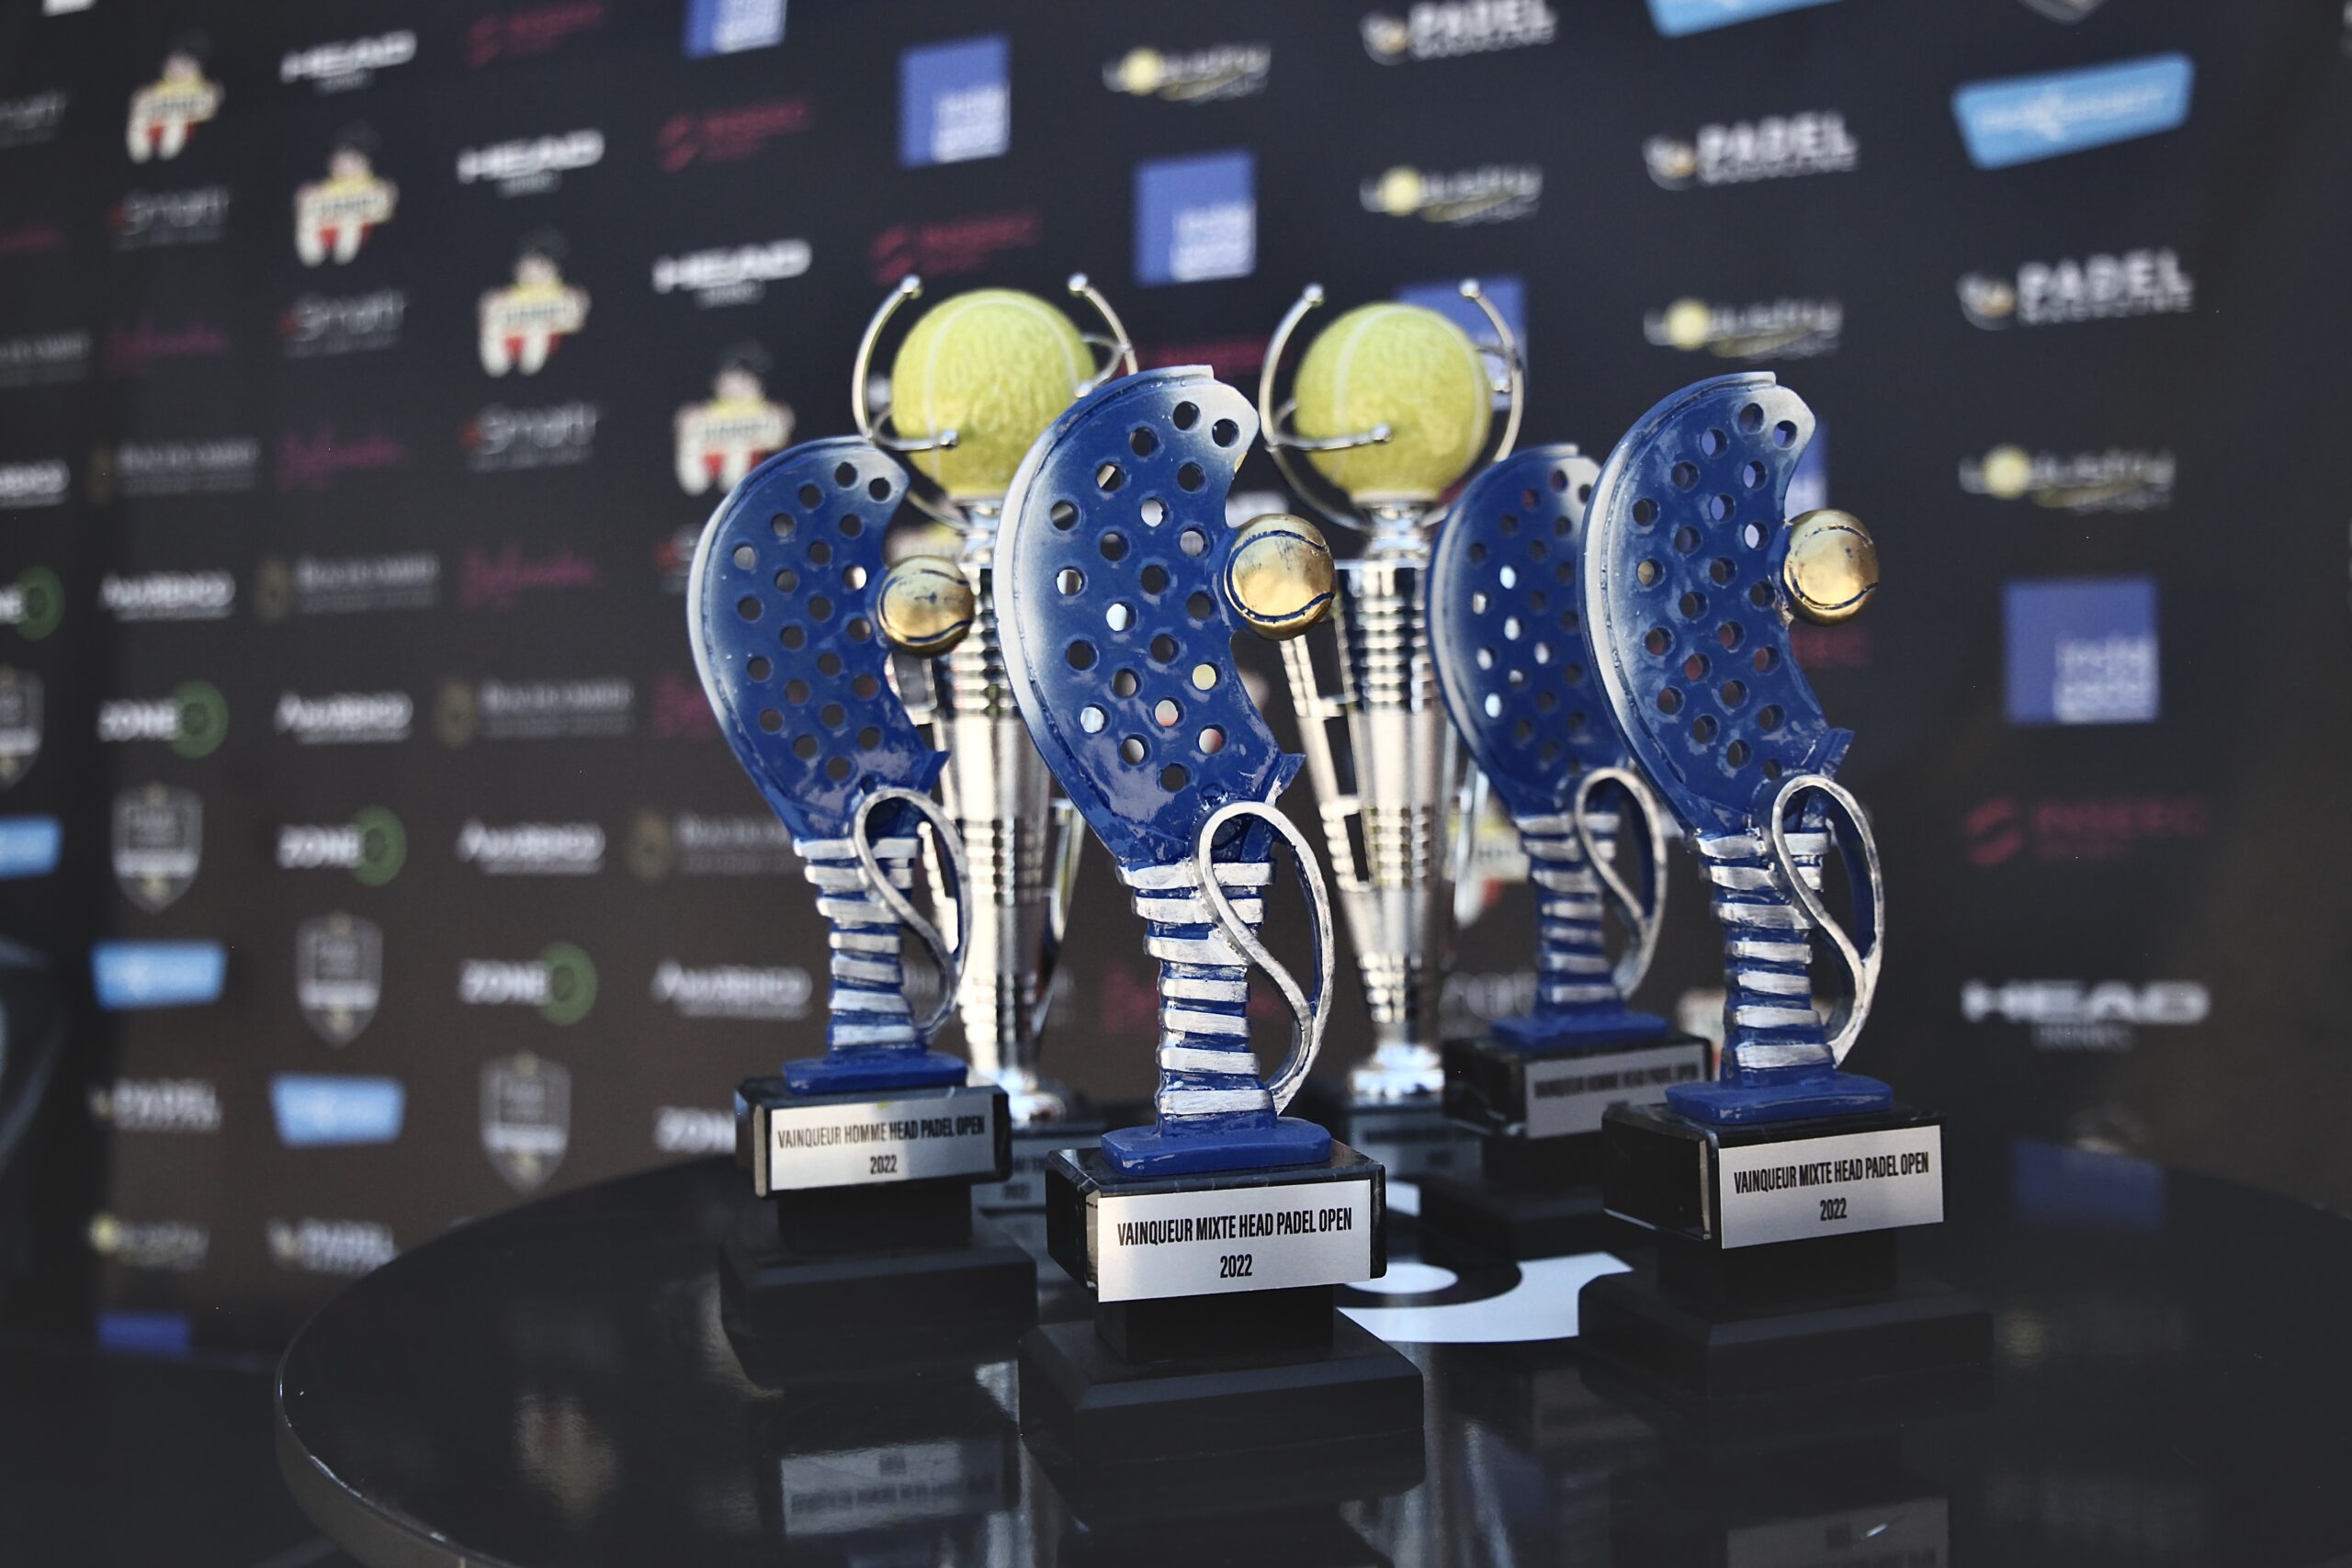 Los ganadores de la 2ª edición del Head Padel Open es conocido !